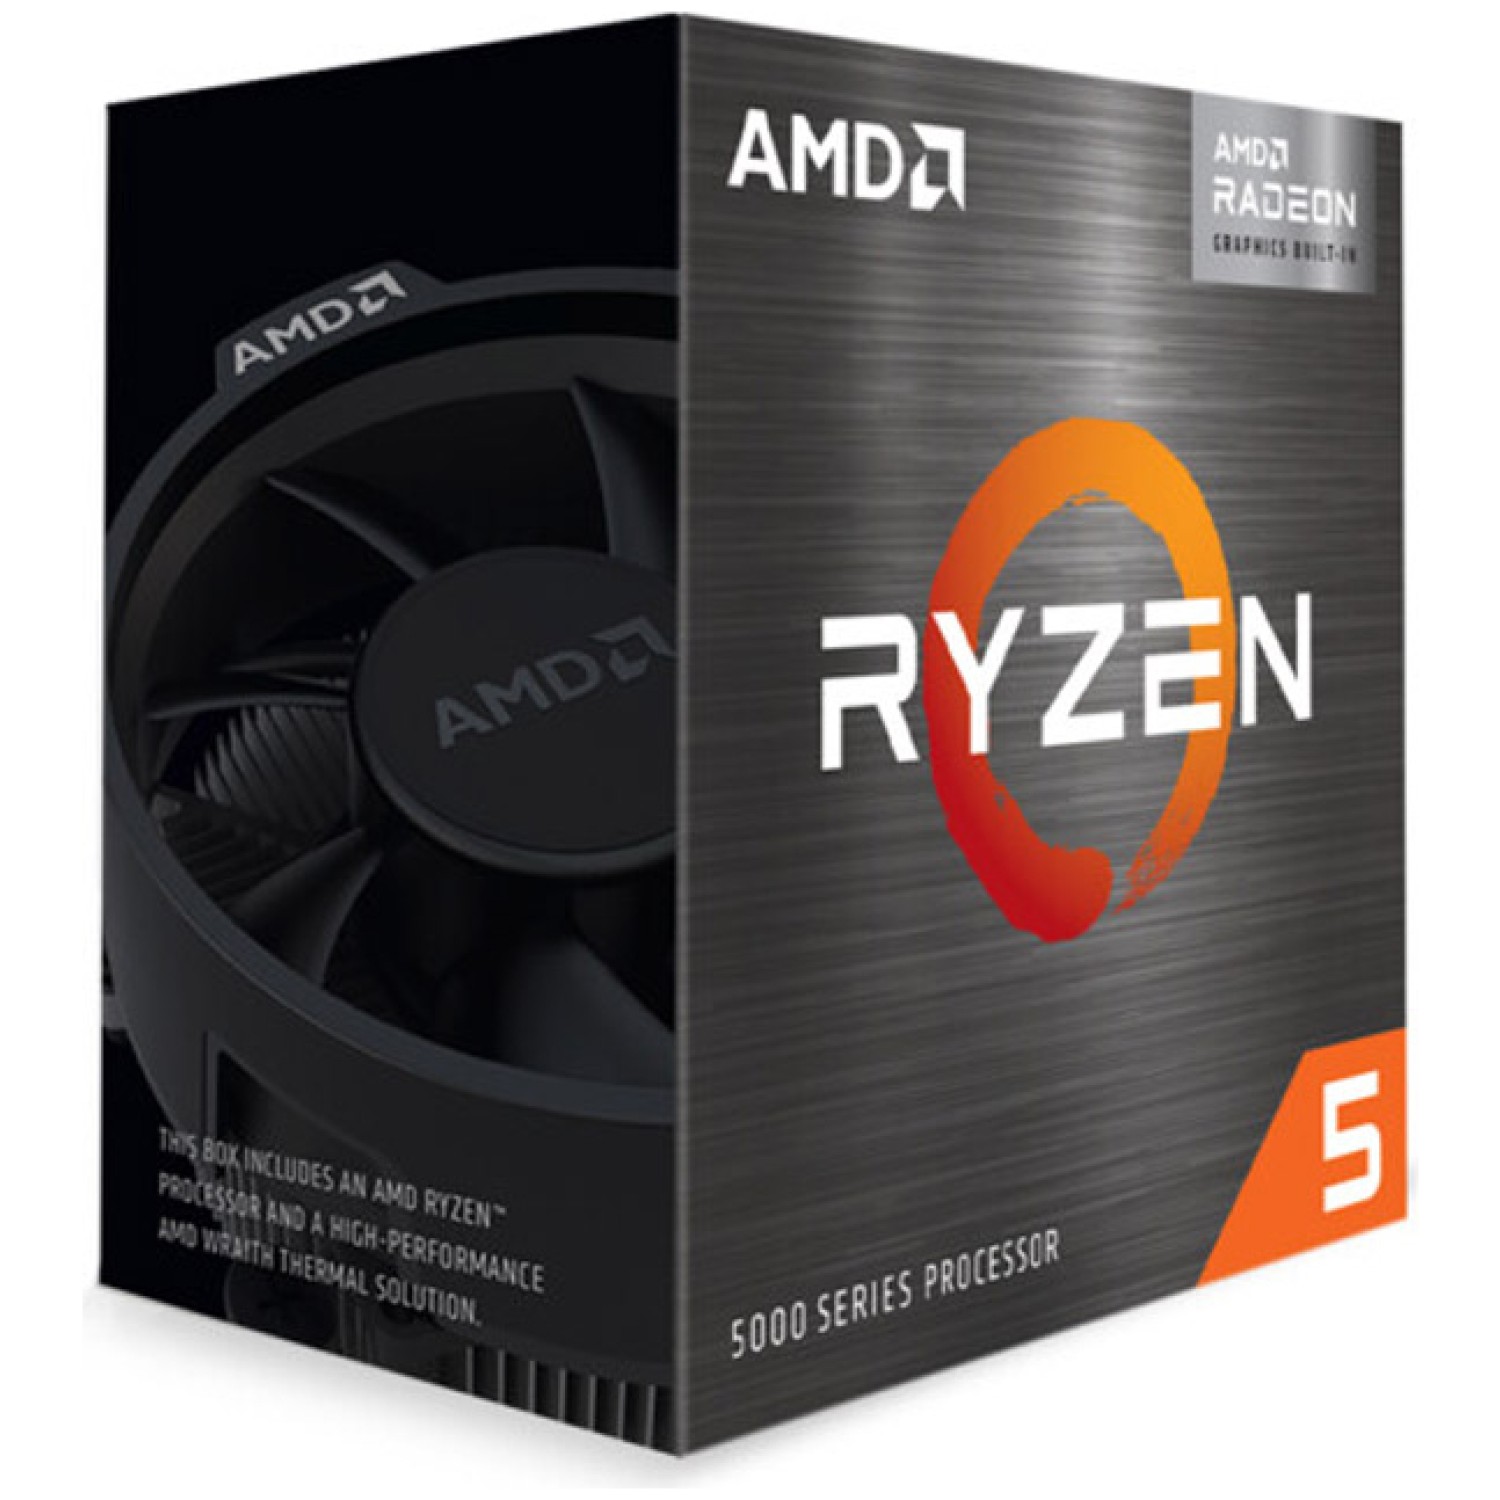 Procesor AMD Ryzen 5 5600G 6-jedr 3